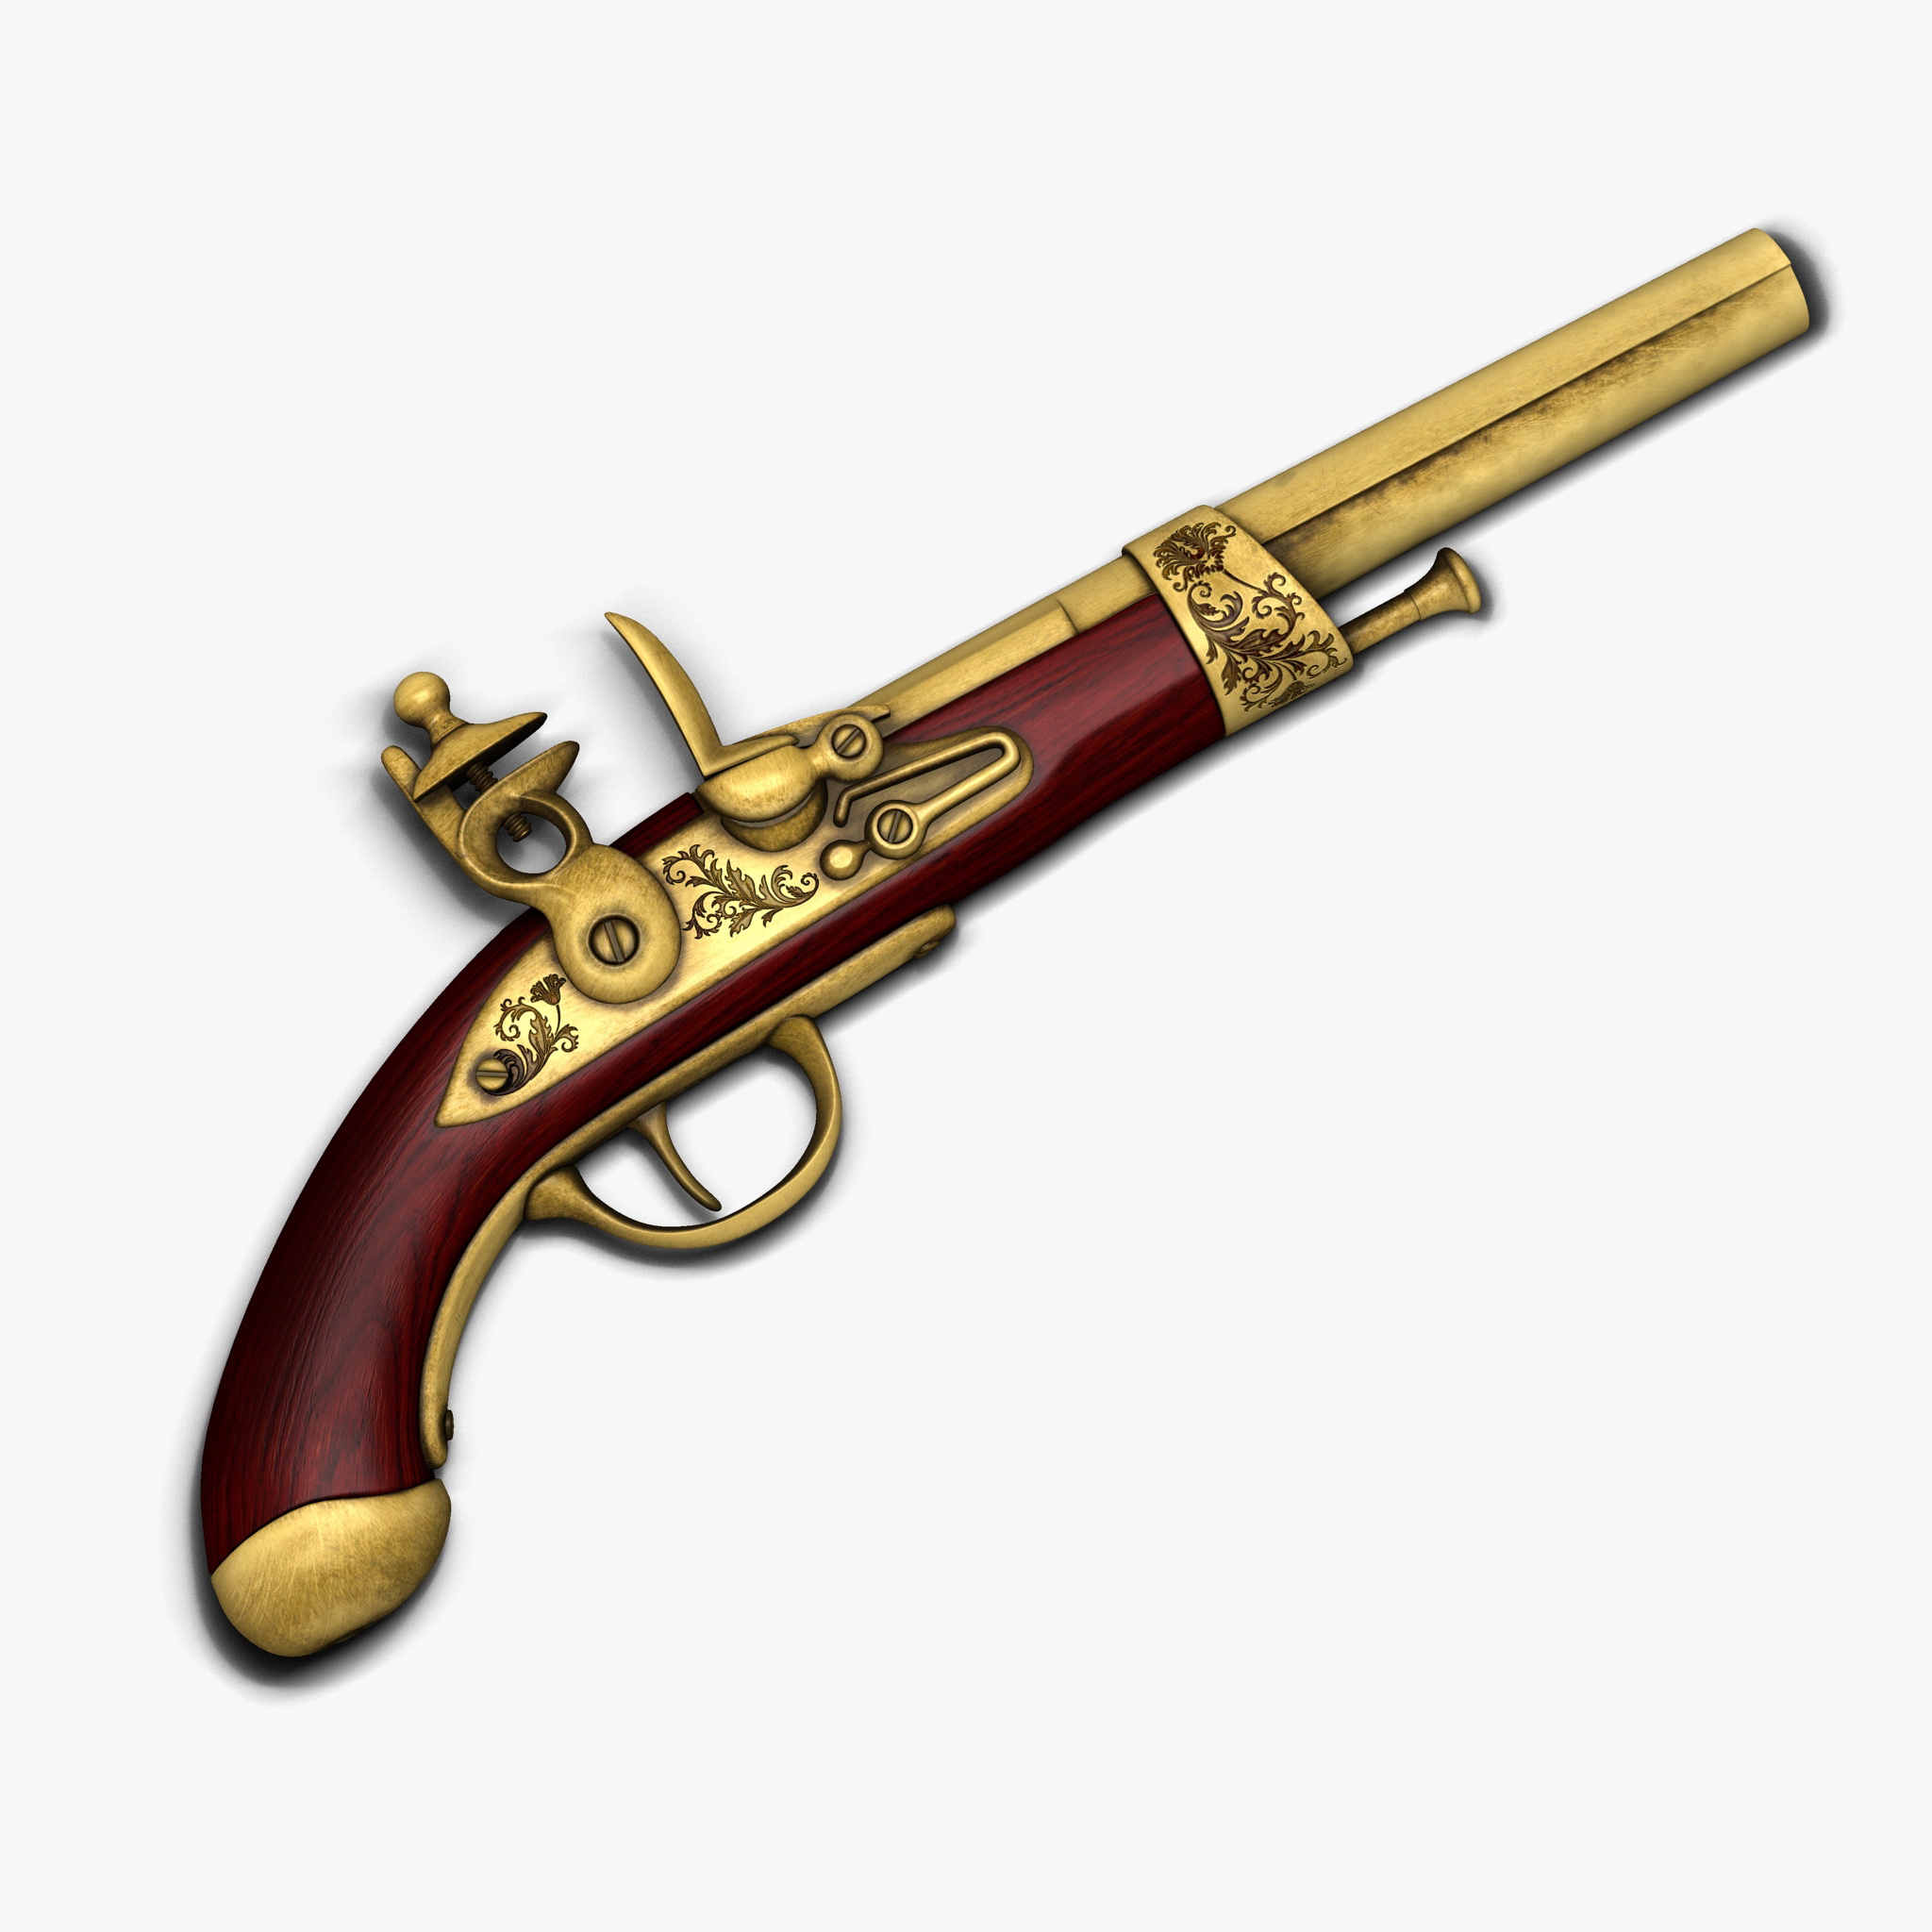 Antique gun pistol flintlock weapon arm old 3D Model – Buy Antique ...